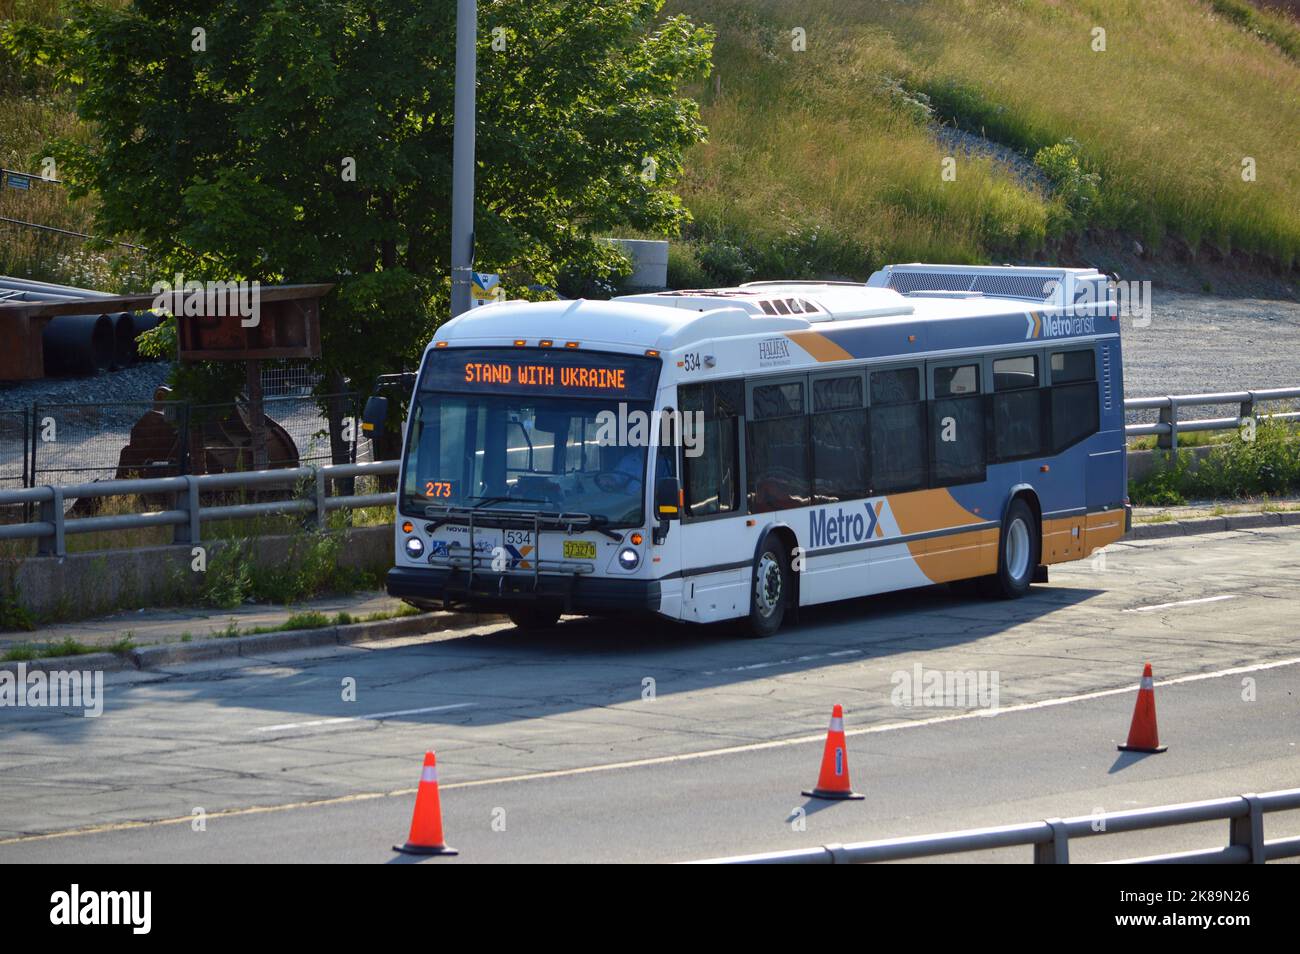 Halifax Transit Nova Bus LFS, in alter Metro Transit 'MetroX' Lackierung, geparkt an der Upper Water Street in der Innenstadt von Halifax mit 'Stand with Ukraine' Schild Stockfoto